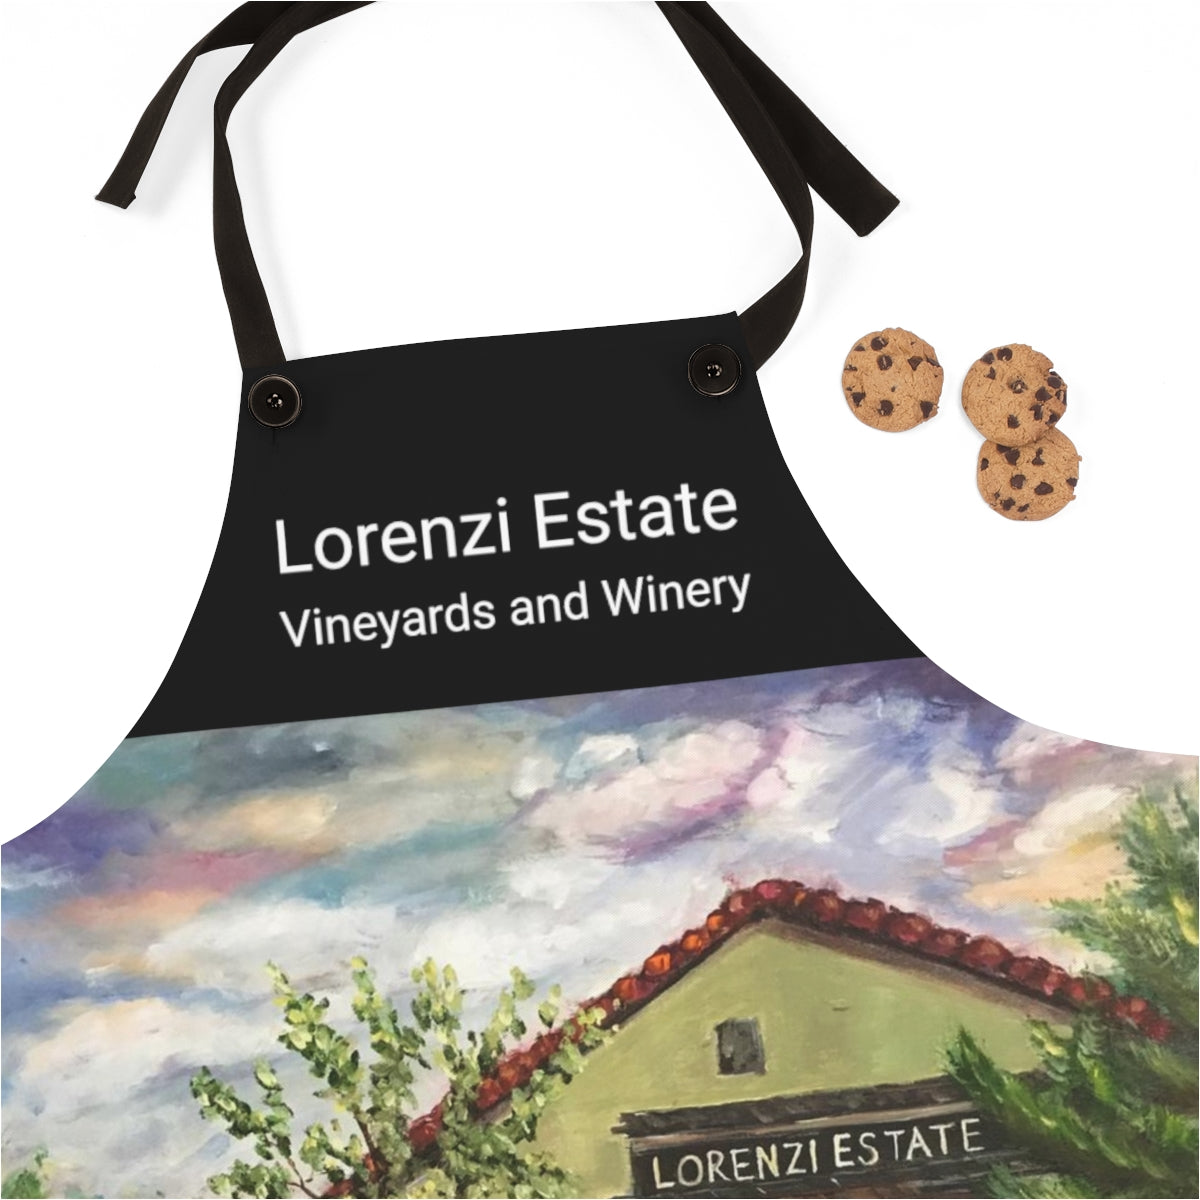 Pintura de viñedos y bodegas de Lorenzi Estate impresa en delantal negro